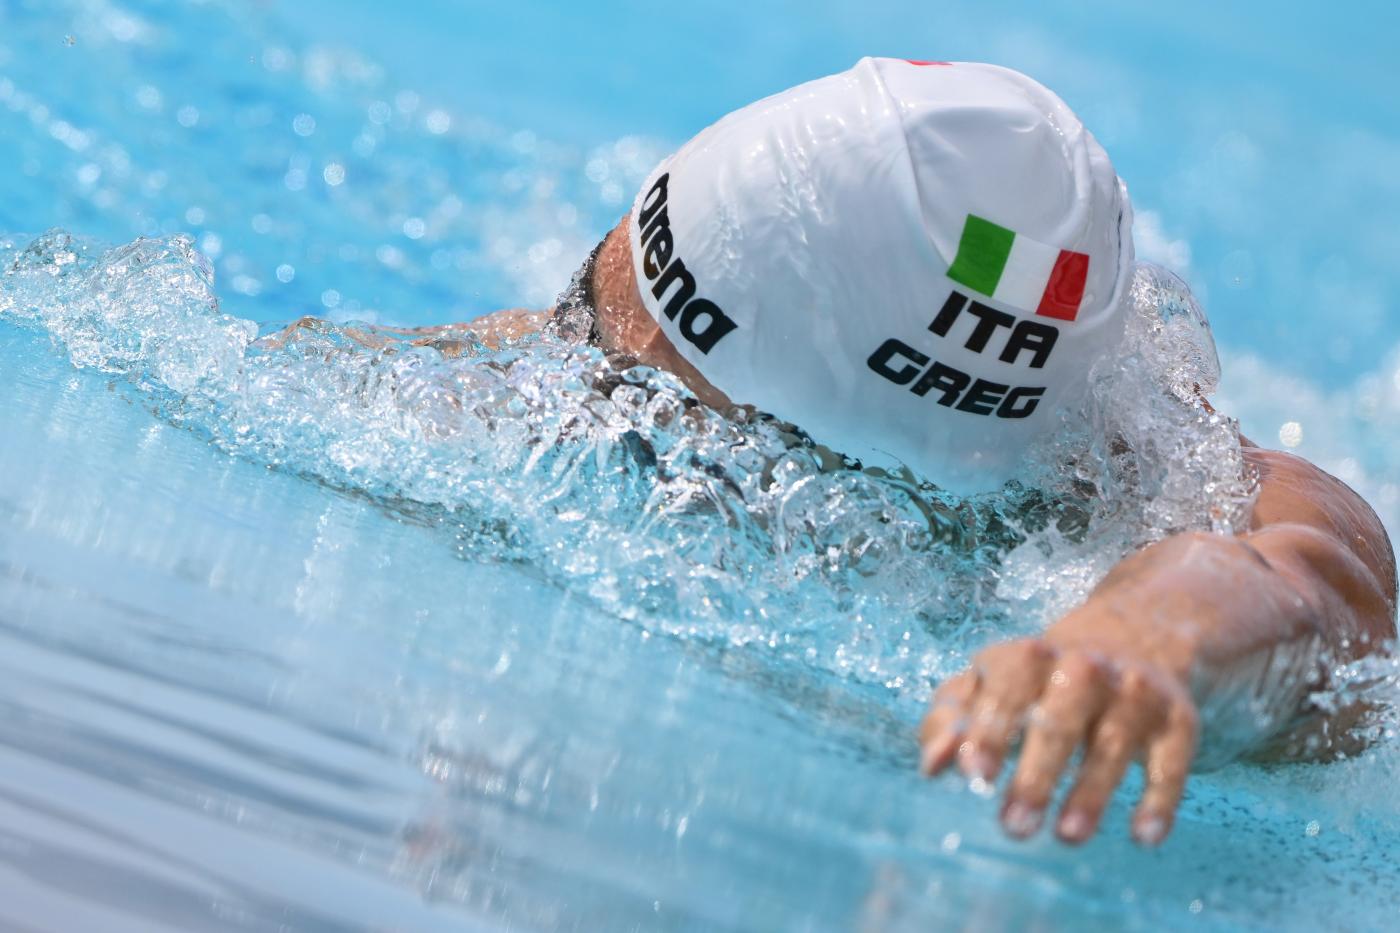 LIVE Europei 2022, liveblog 16 agosto in DIRETTA: Giupponi vicino al bronzo nella 35 km! Bene il nuoto!